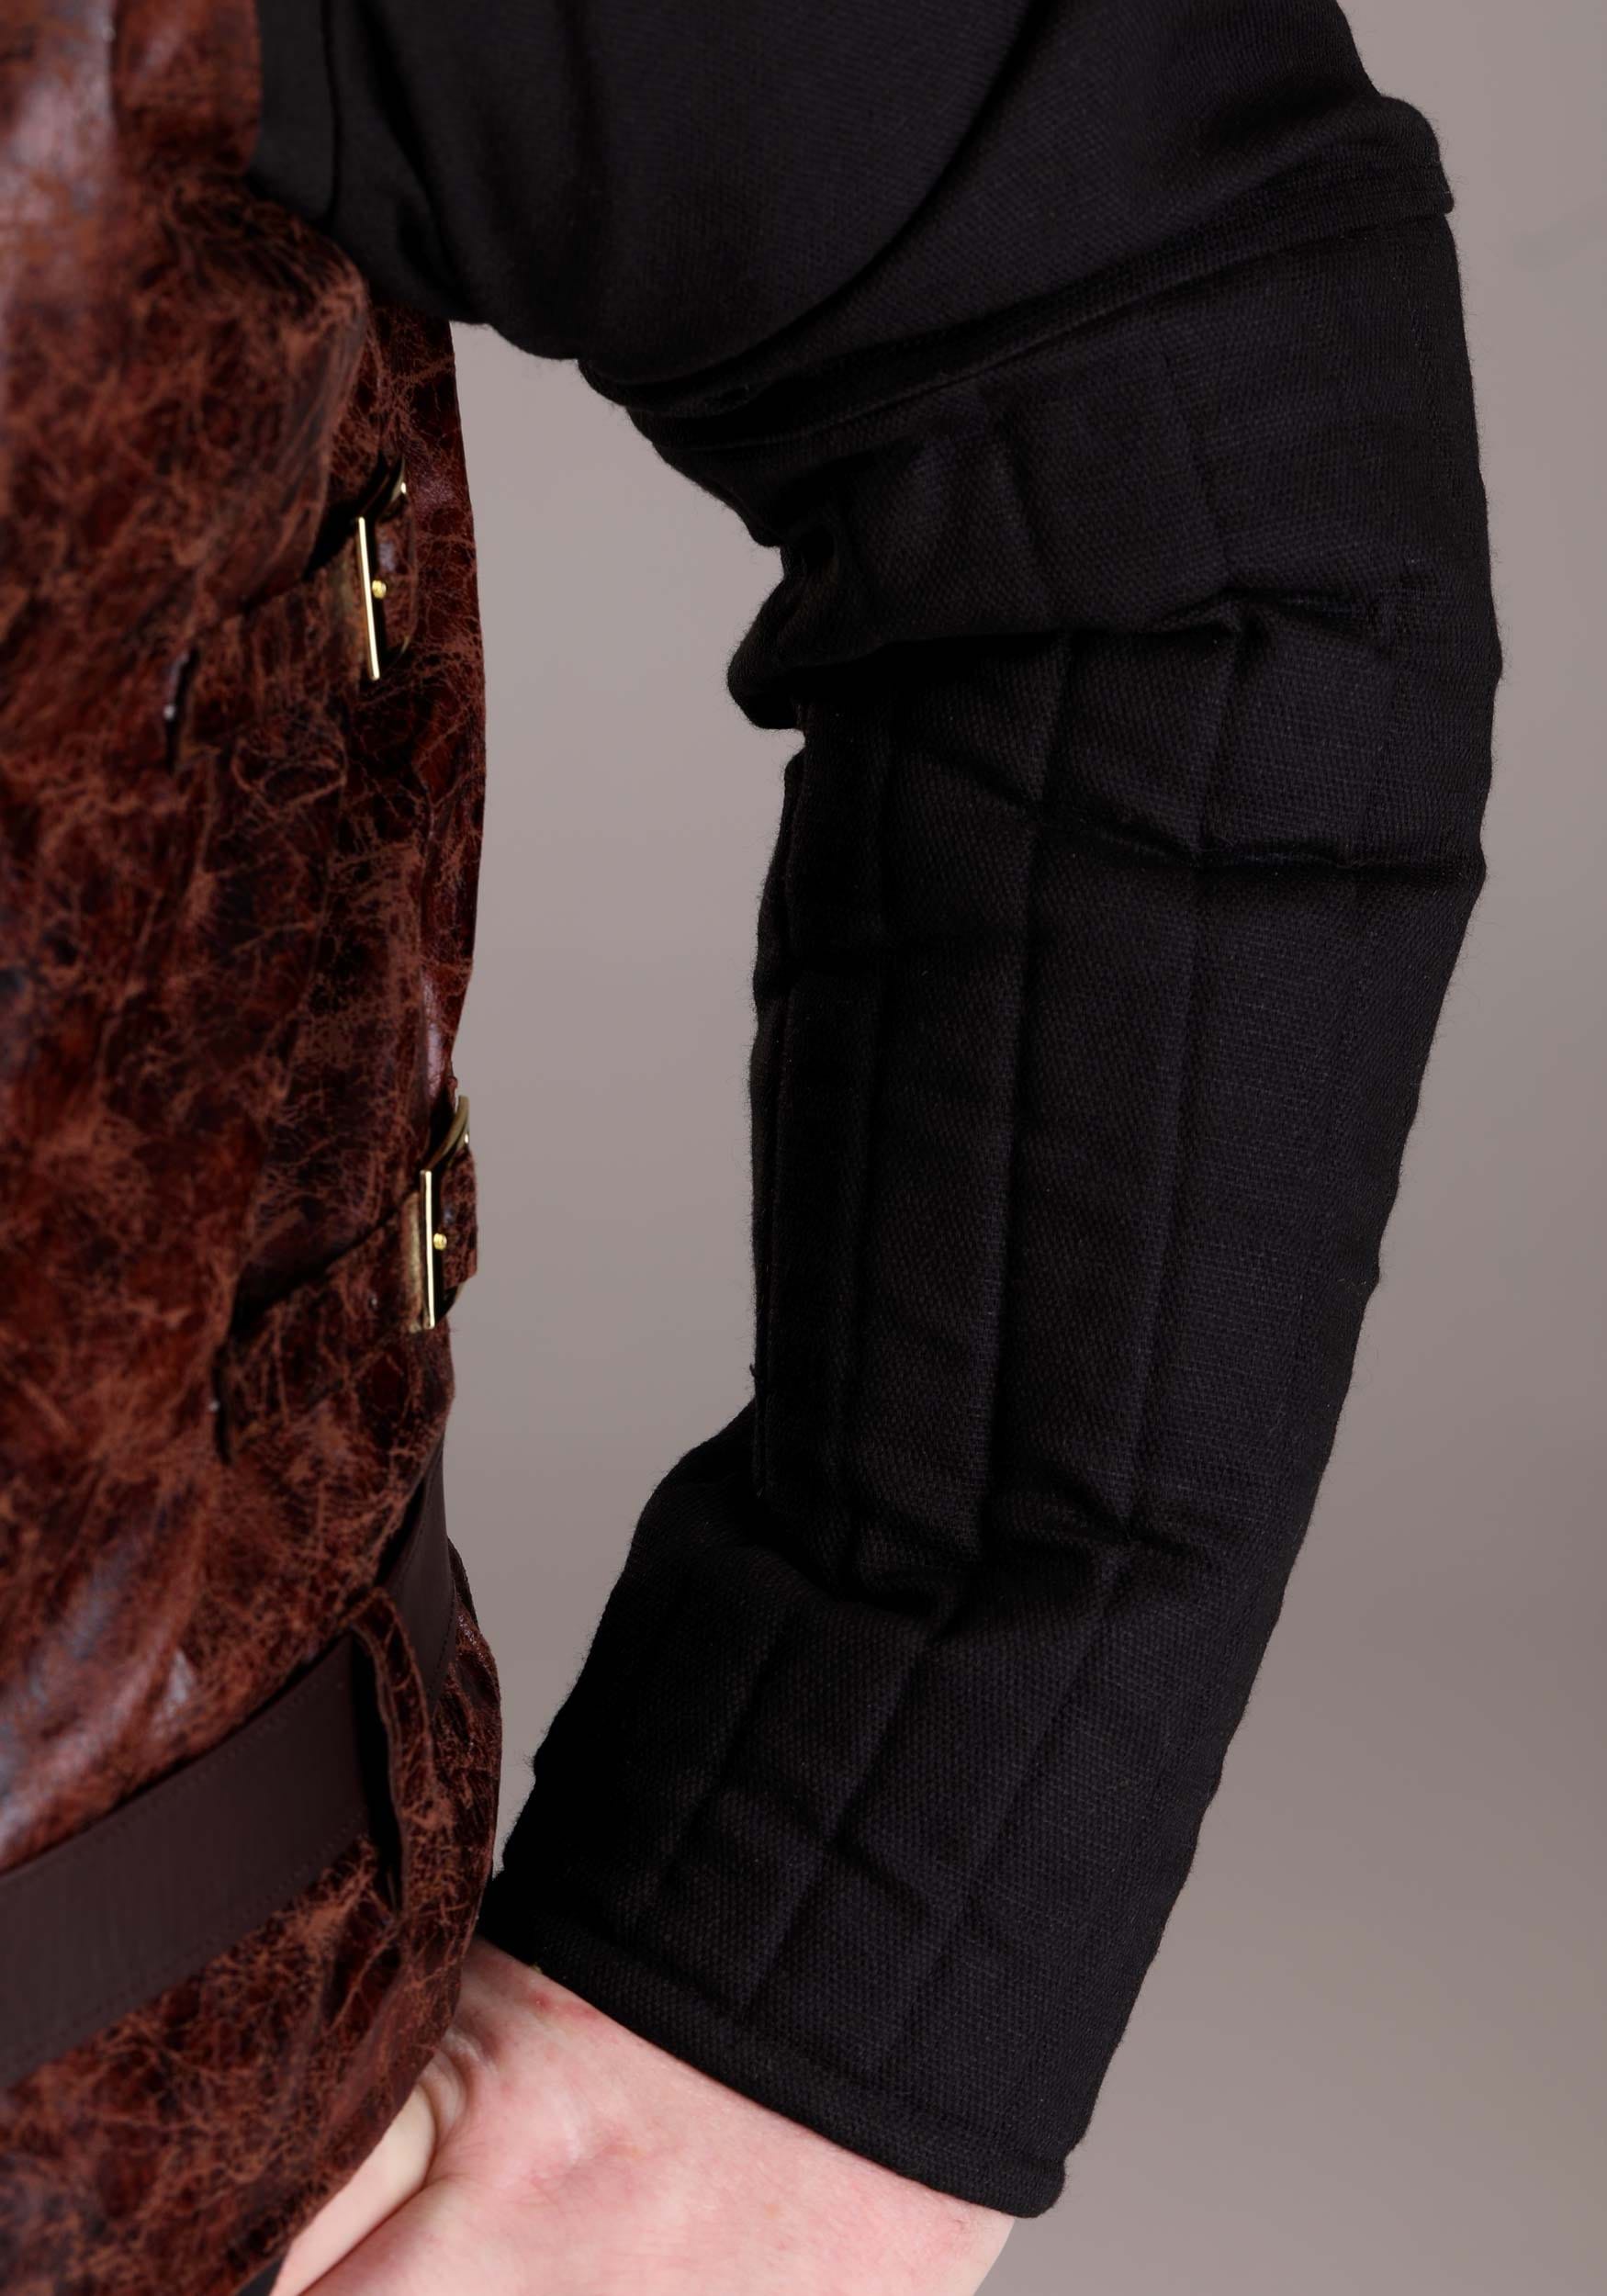 Louis Vuitton Brown Monogram Inflatable Vest